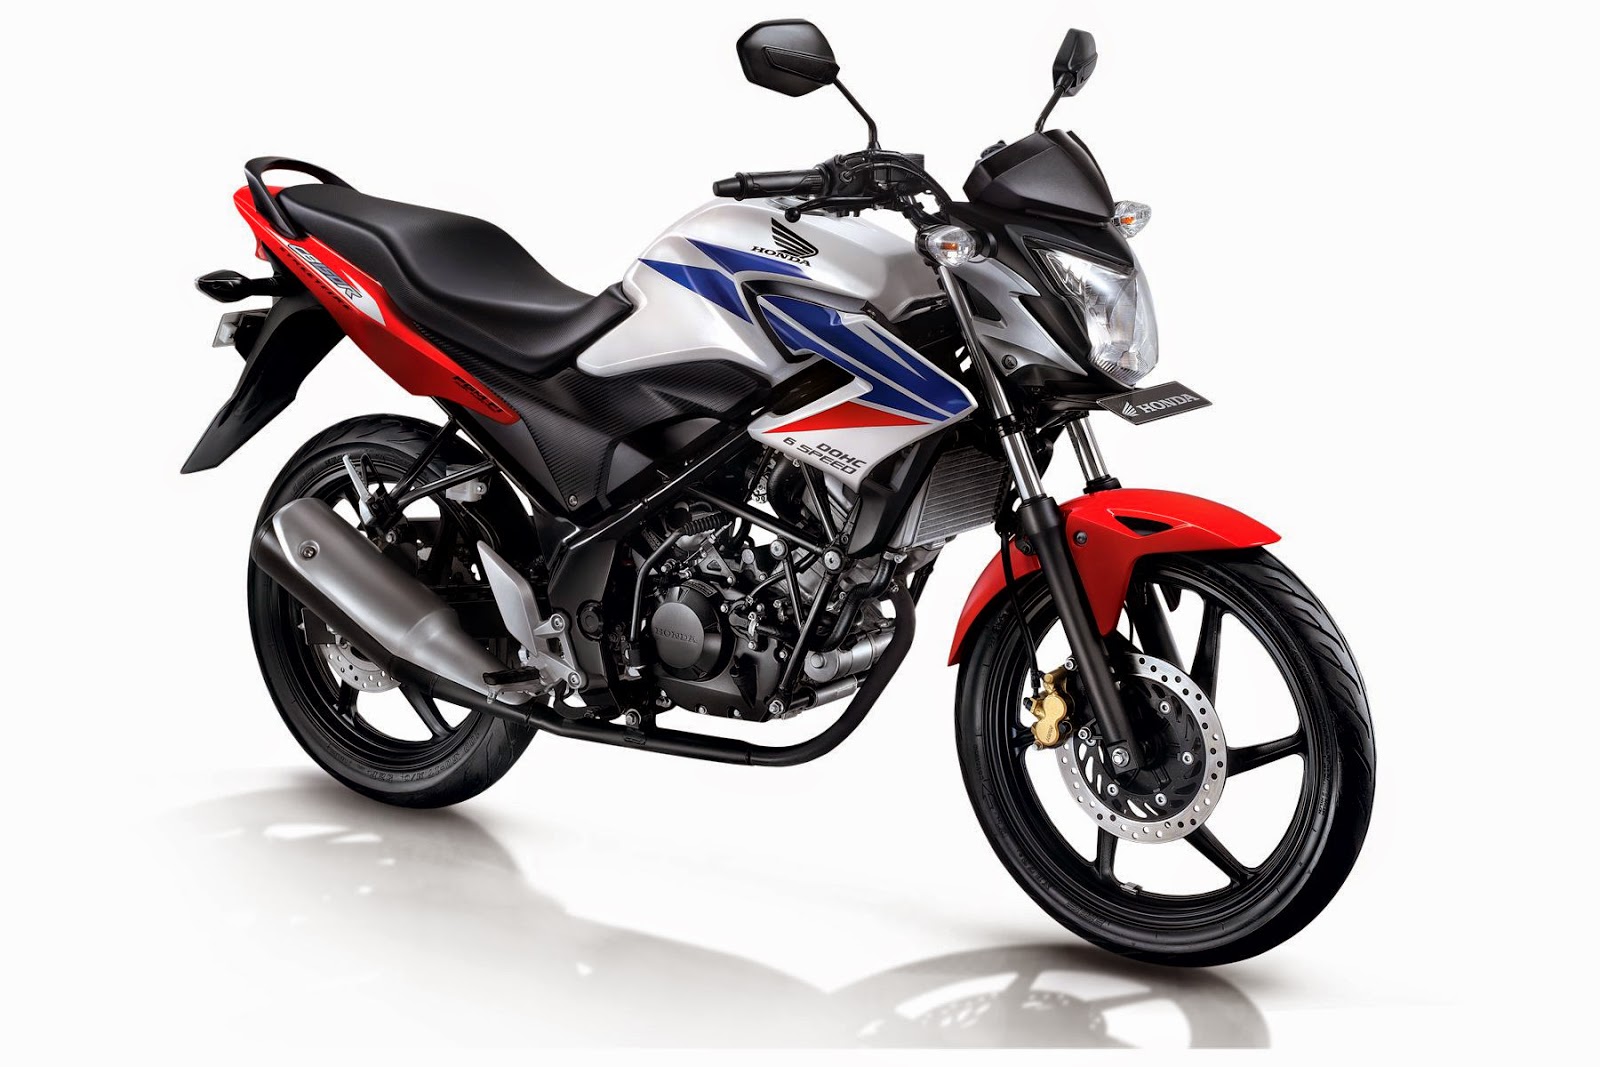 Harga Motor Honda Dan Spesifikasinya Kredit Honda Murah Bandung